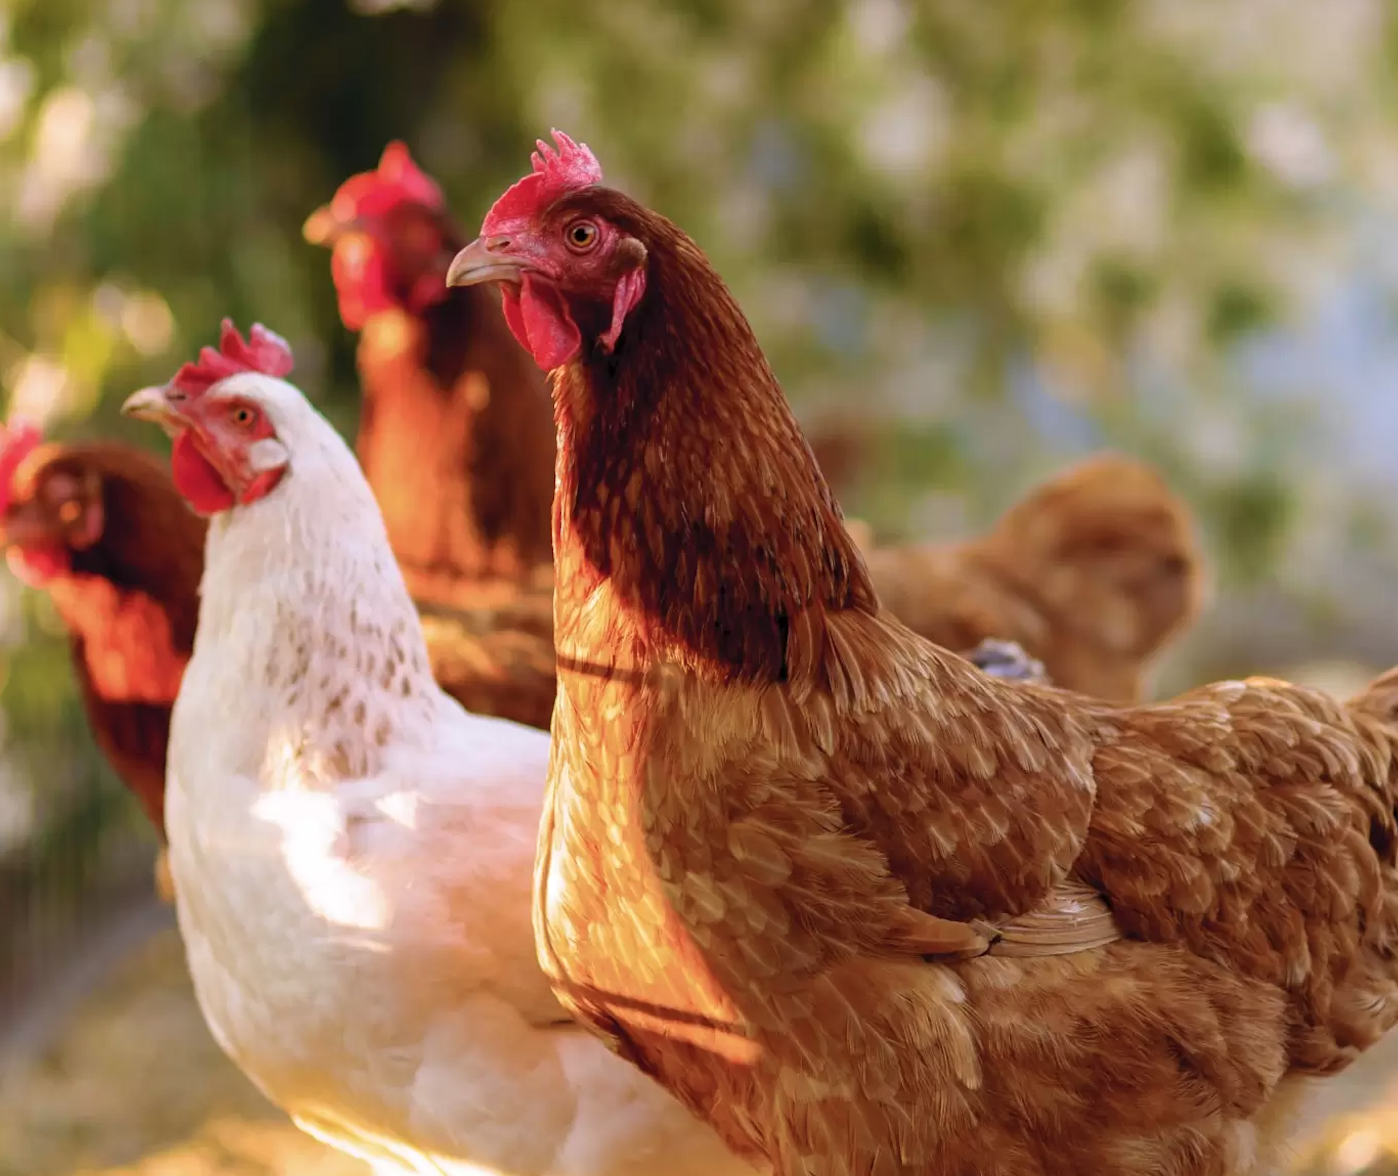 MAG declara estado de alerta zoosanitaria por influenza aviar para los próximos 6 meses